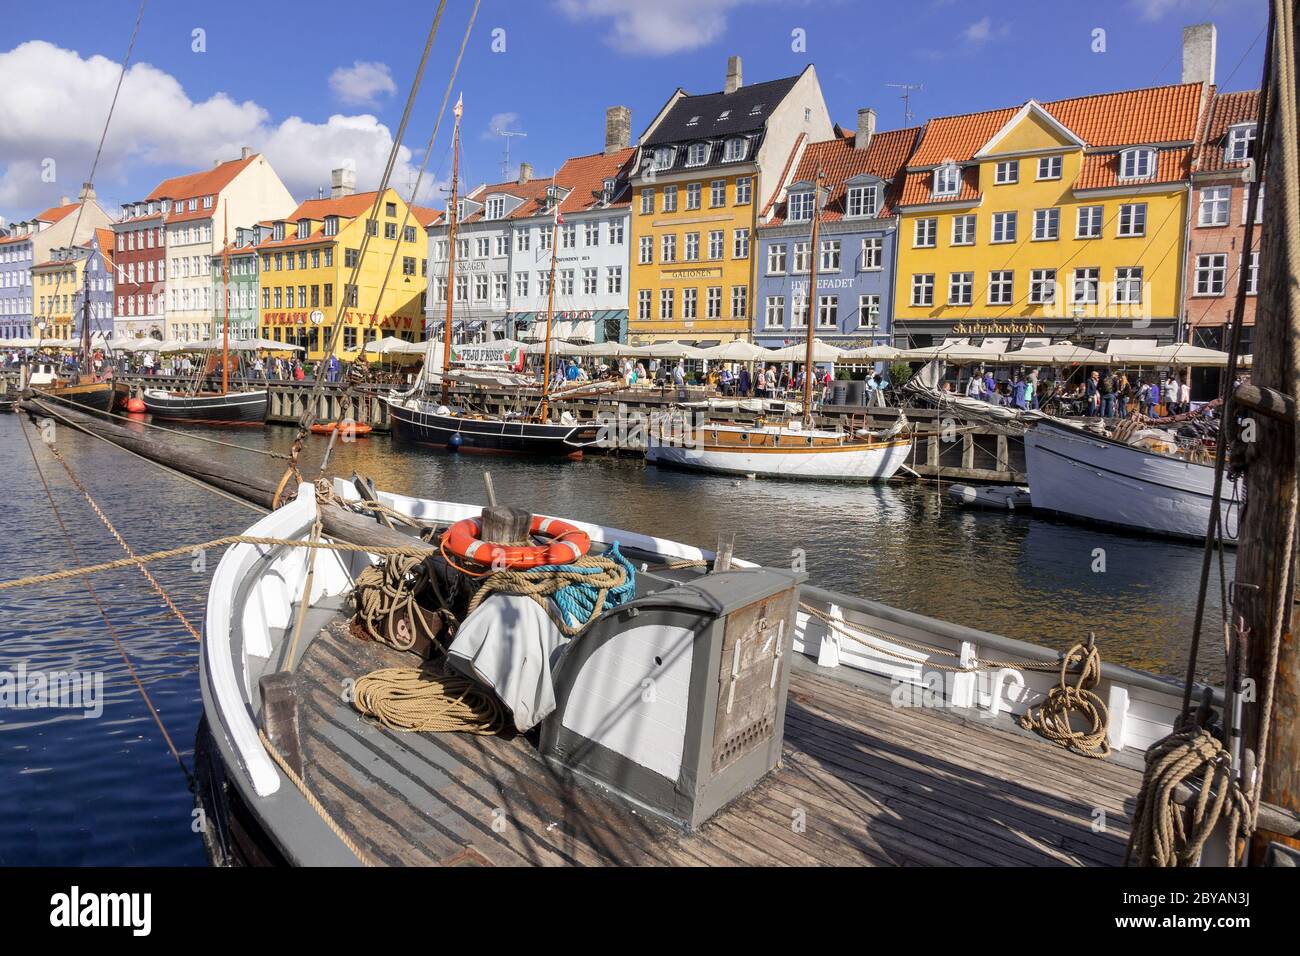 Canal de bord de mer de Nyhavn il y a plein de restaurants et de bars à Copenhague, Danemark Banque D'Images